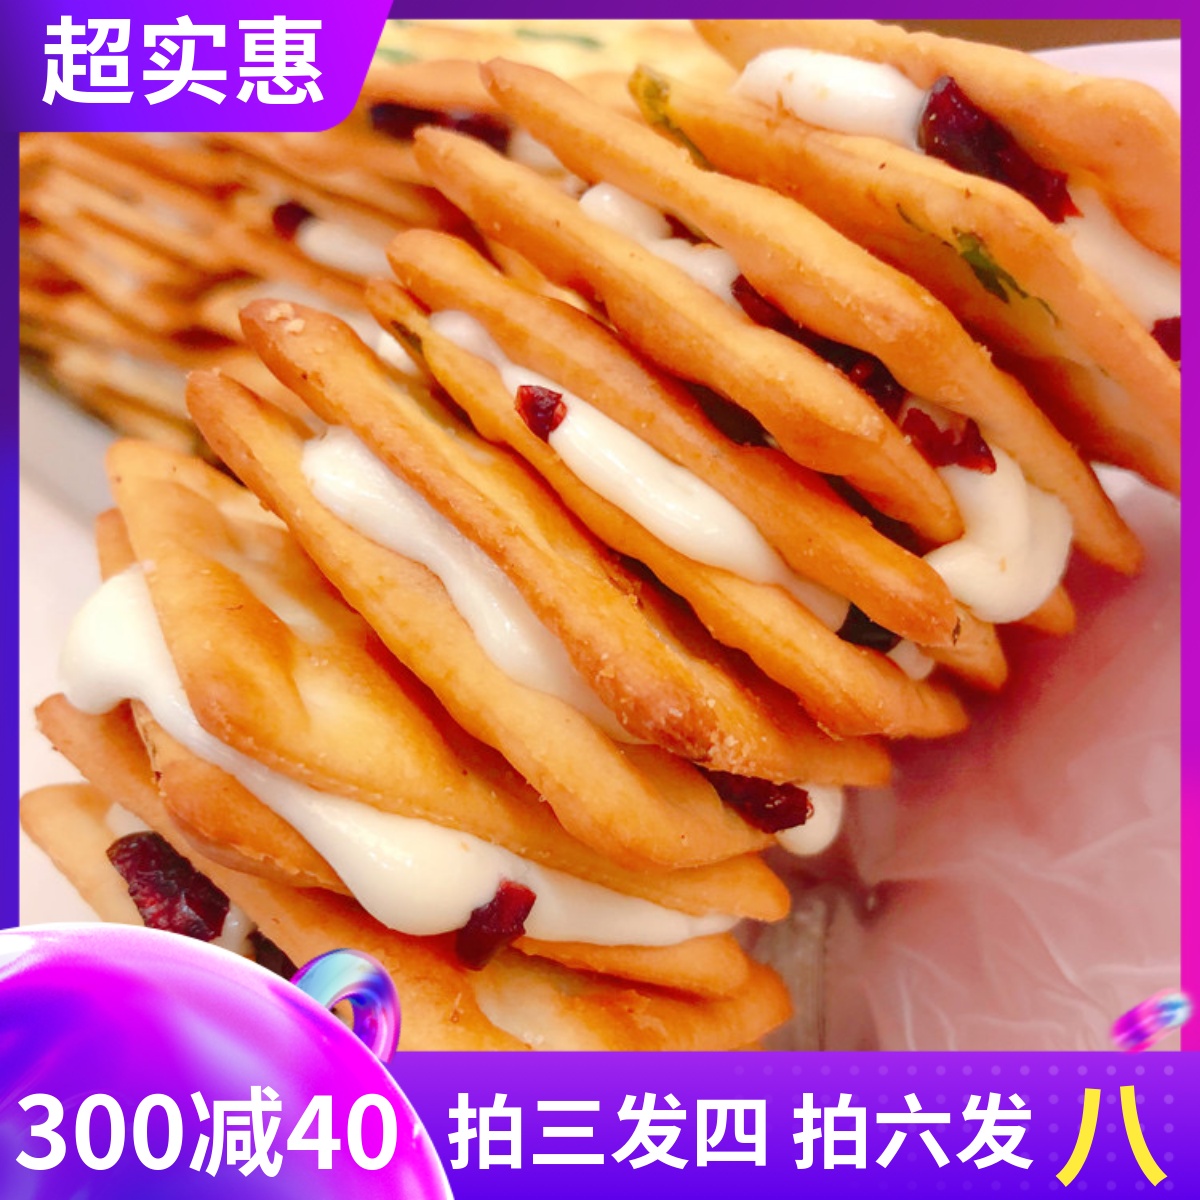 纯手工牛扎饼干台湾口味孕妇零食无添加牛轧糖饼干好吃的网红零食